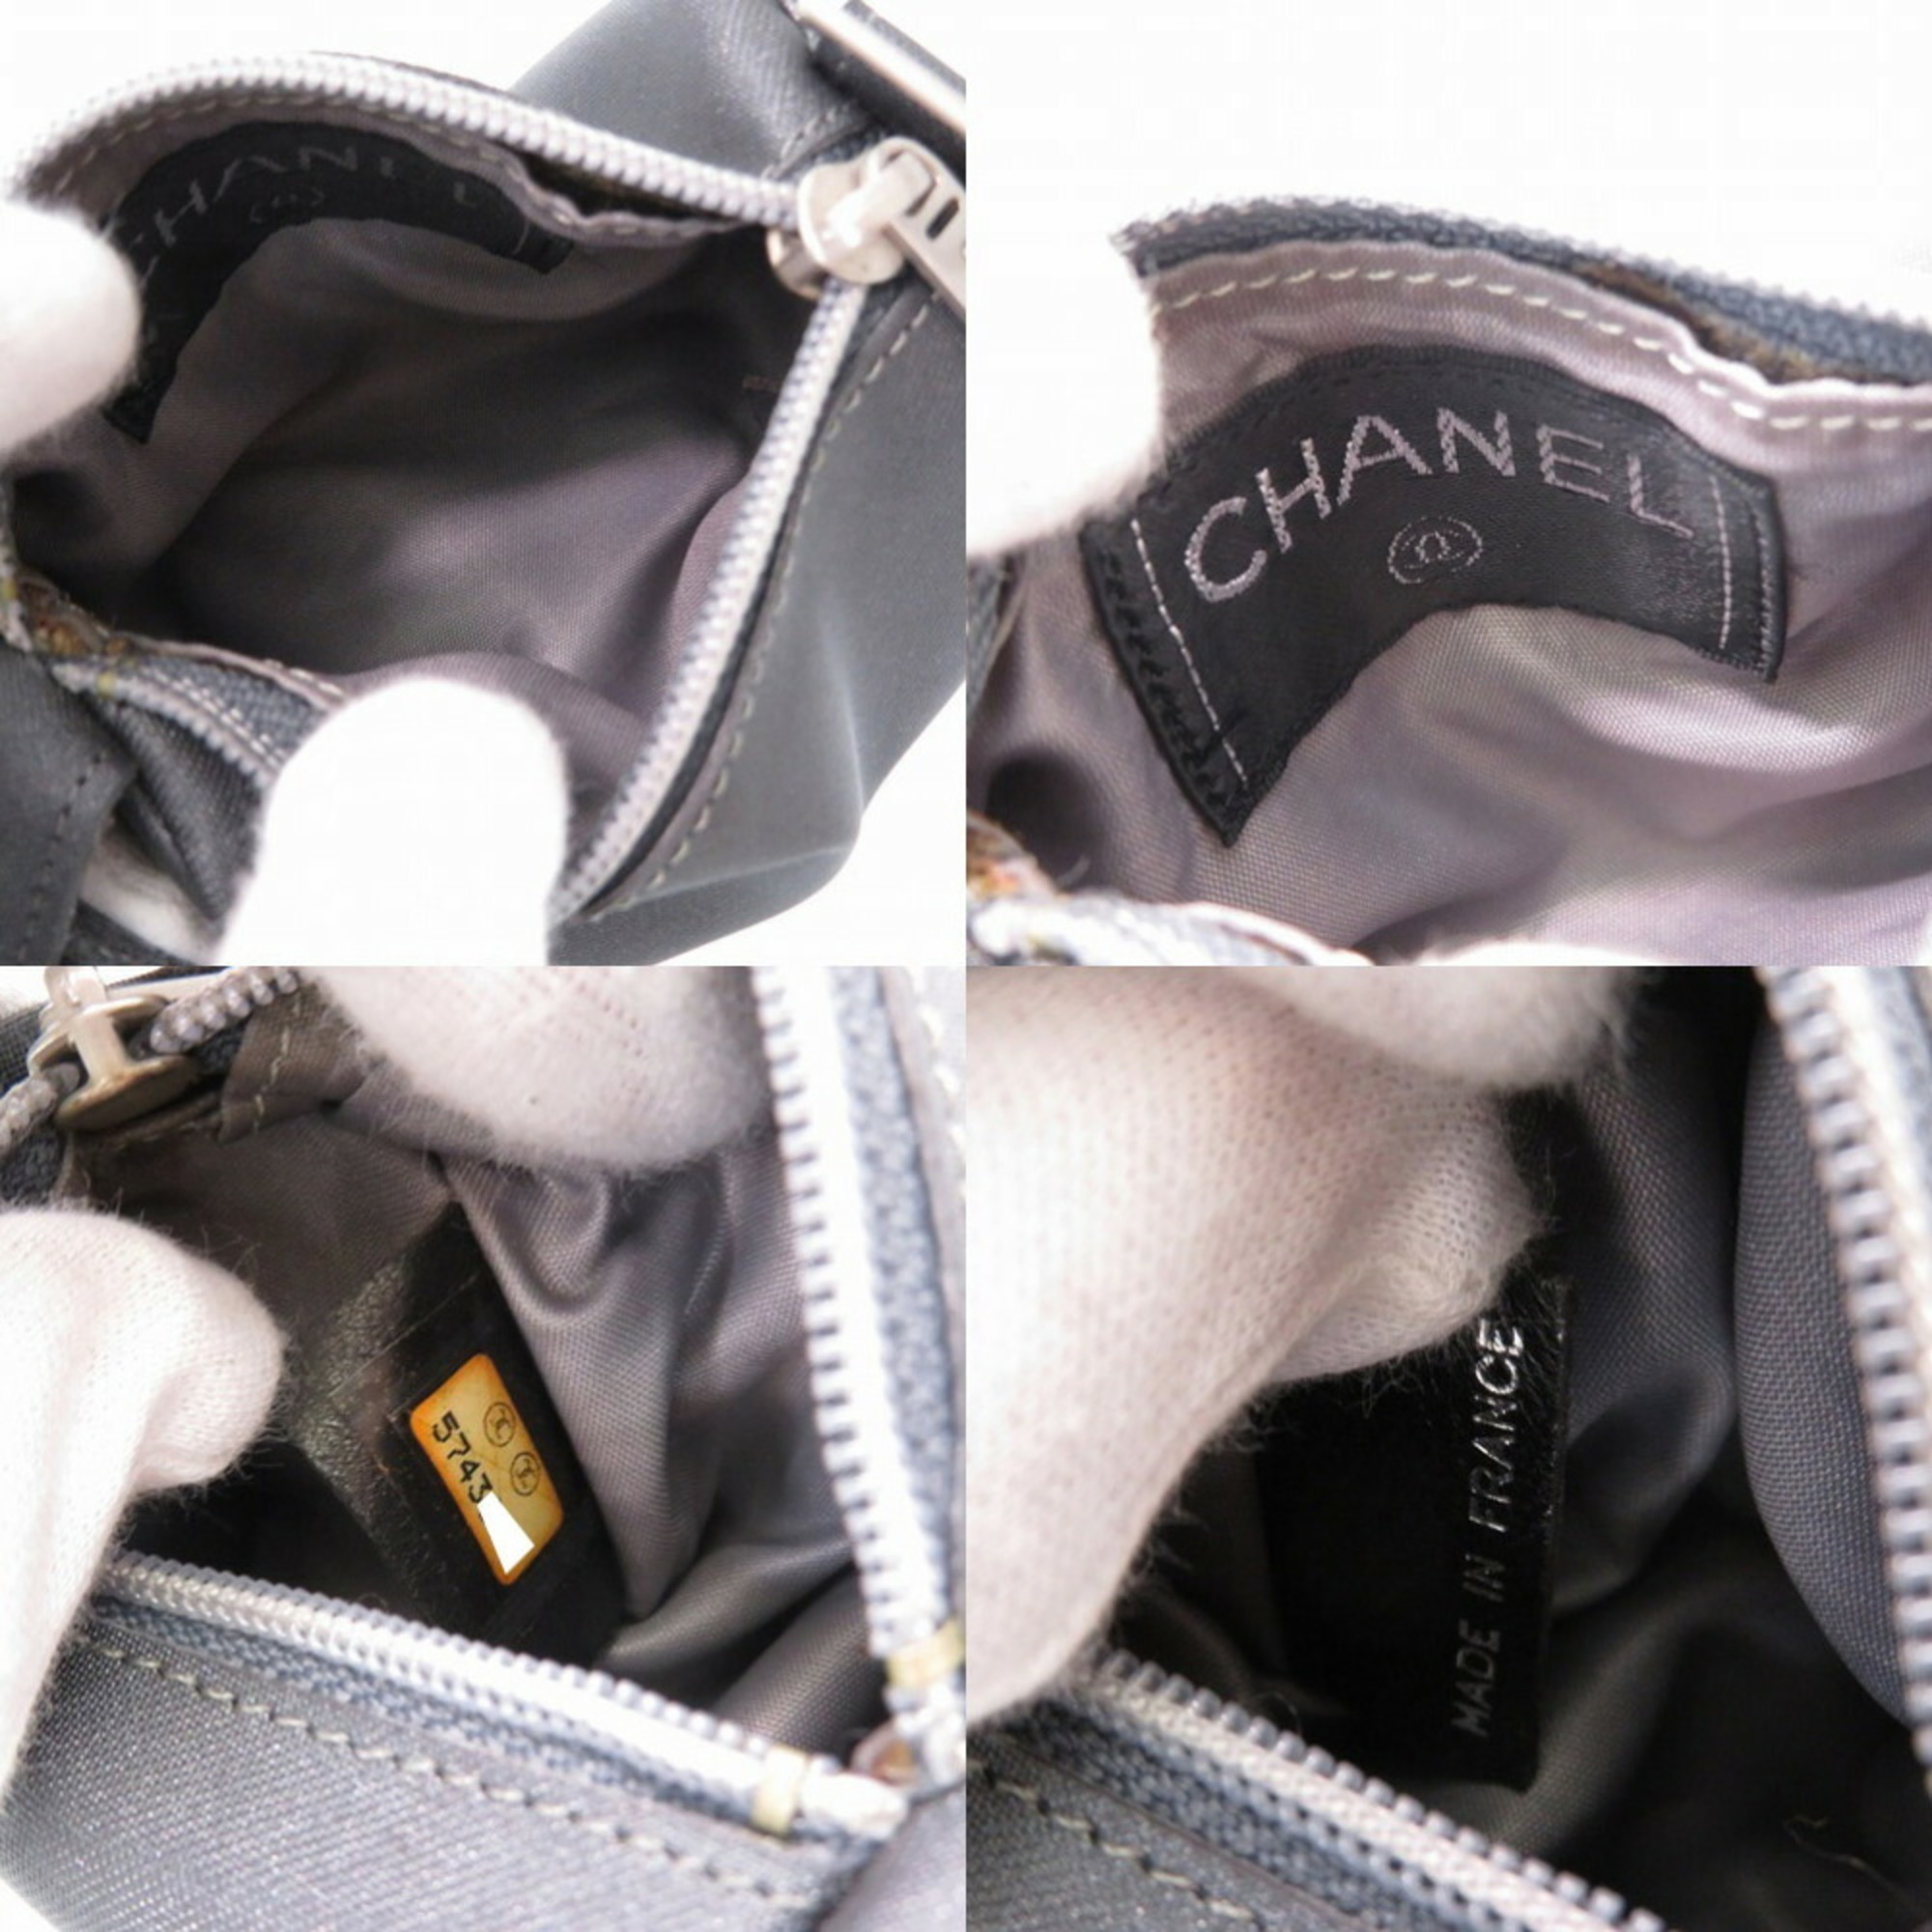 Chanel Nylon Pouch 5s Gray 0047CHANEL